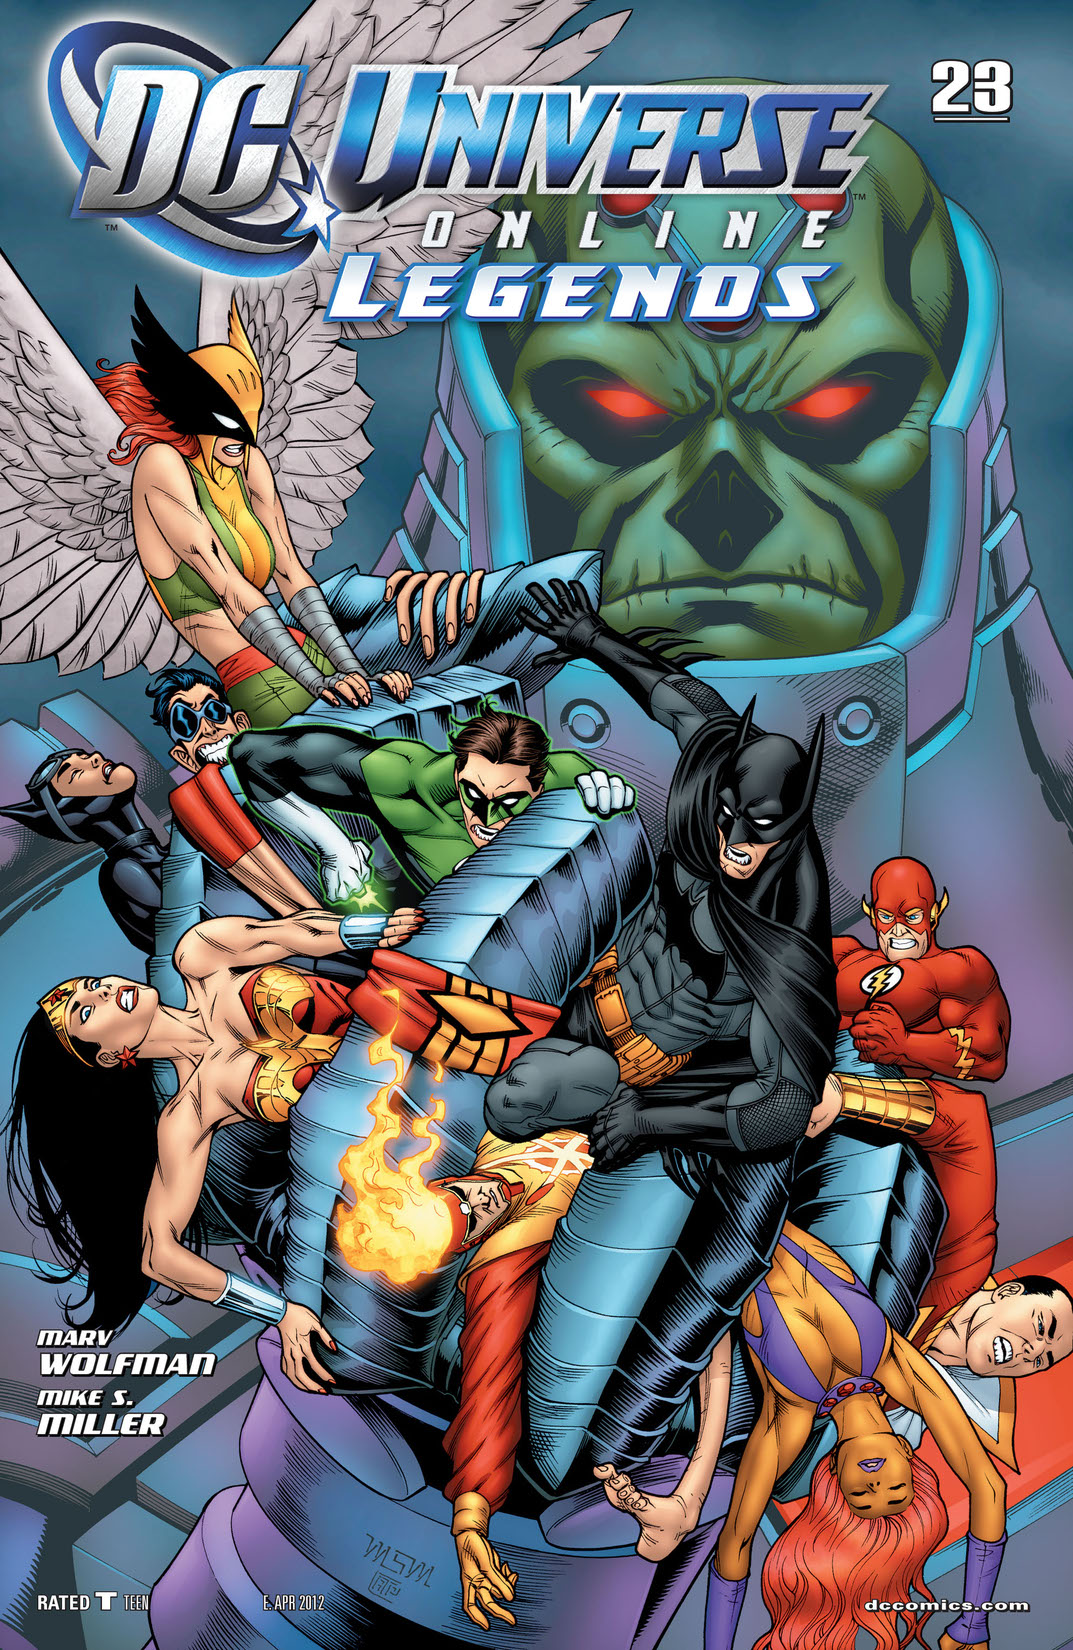 DC Universe Online Legends #23 preview images